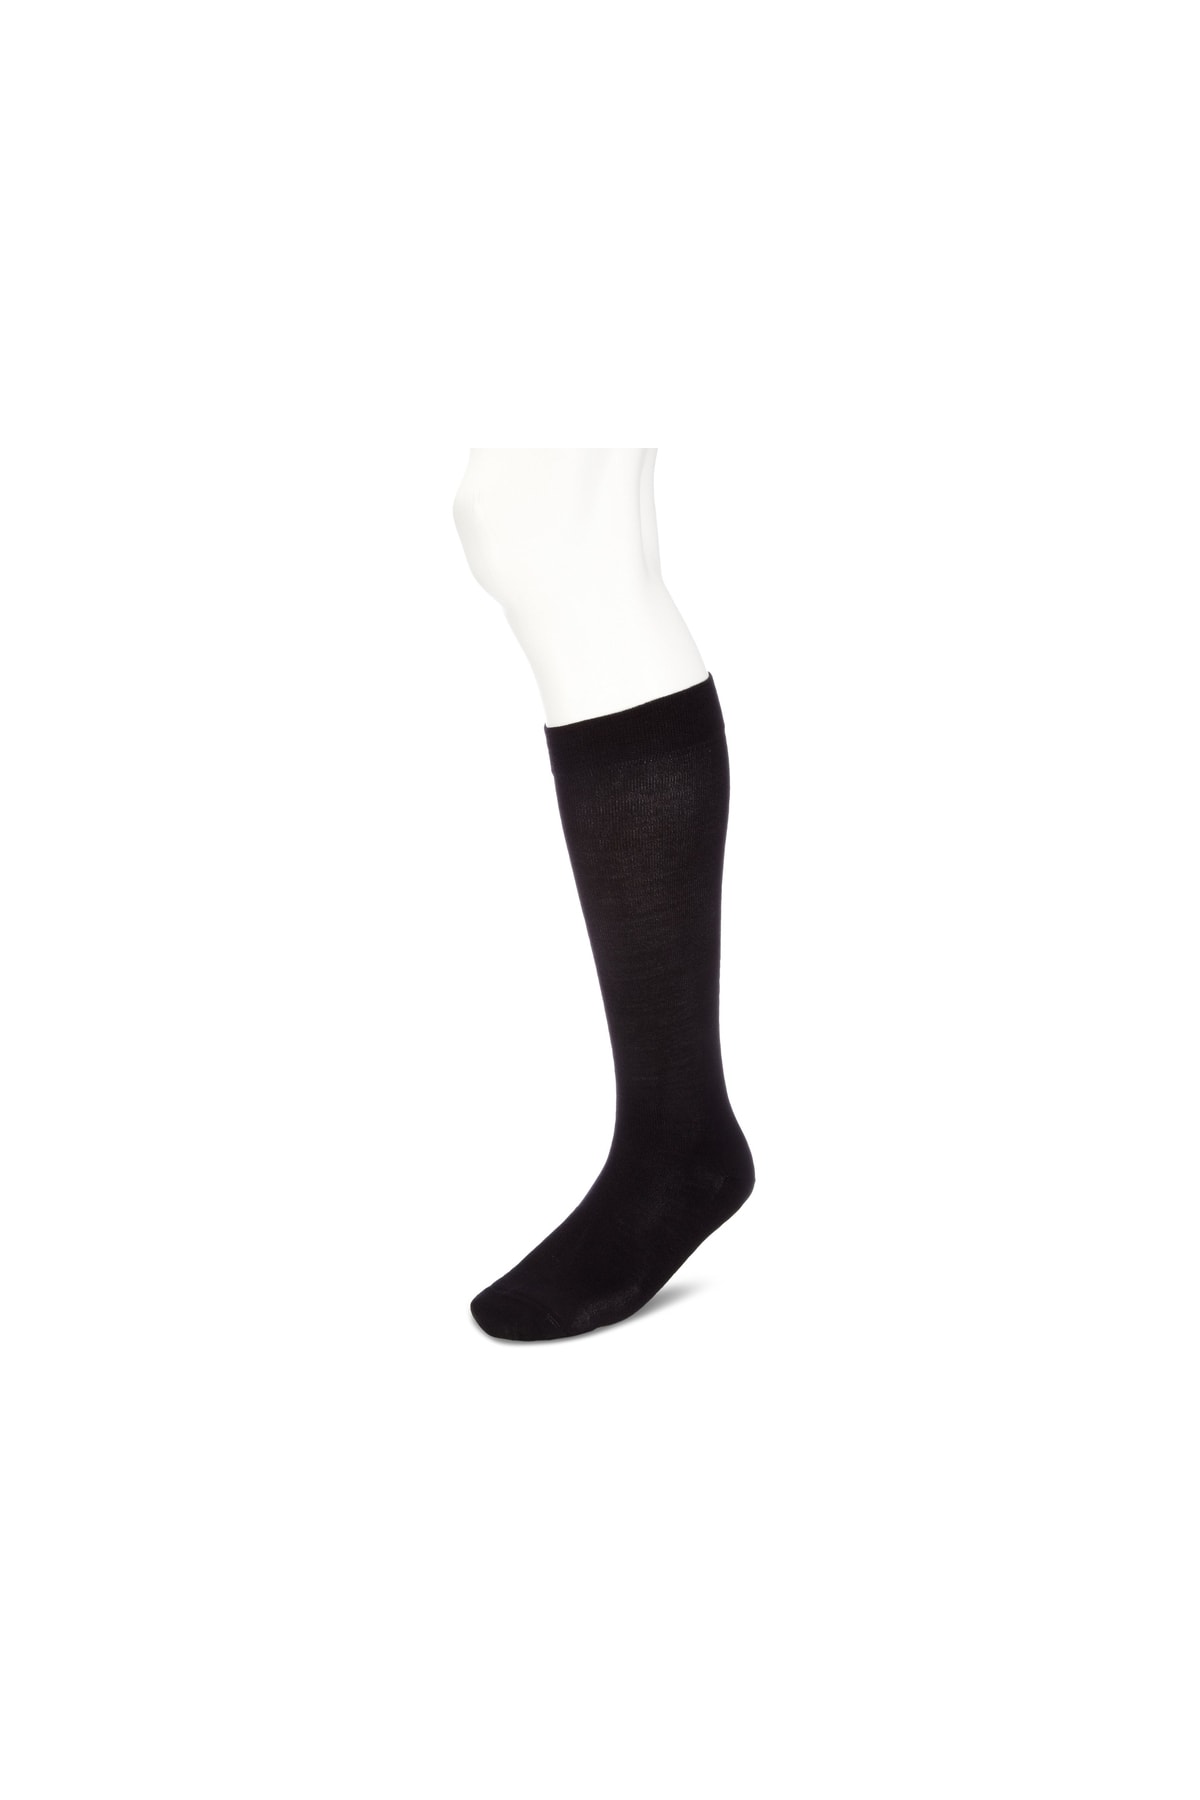 KUNERT Socken Schwarz Casual Fast ausverkauft